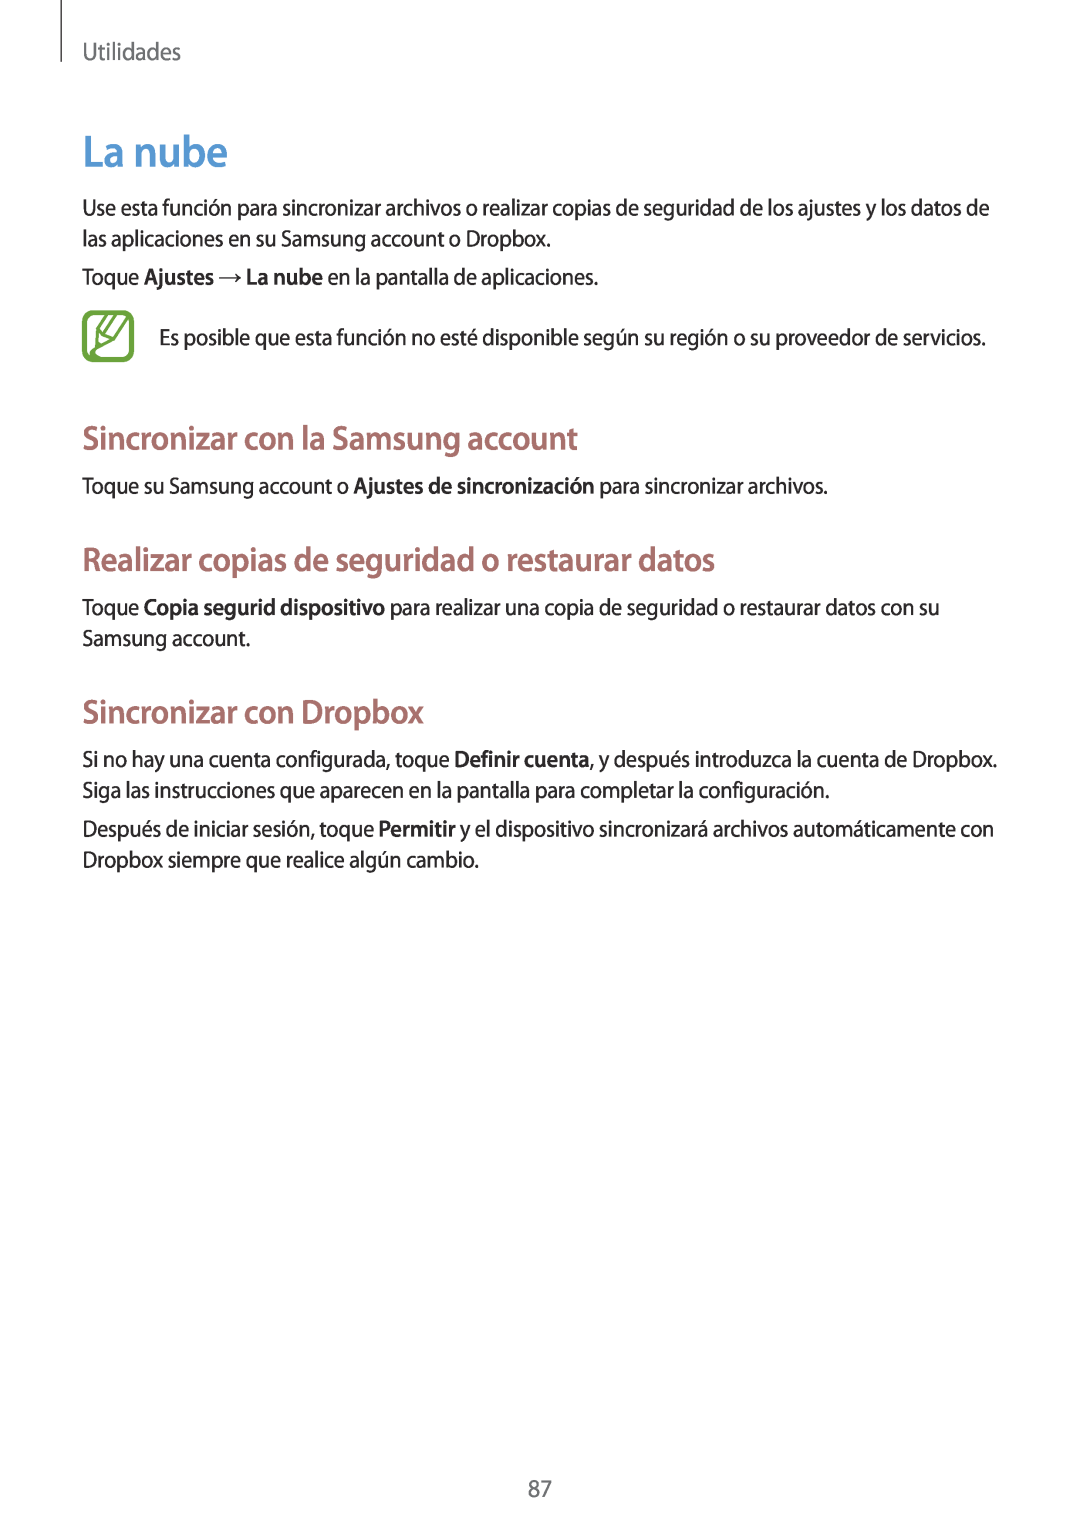 Samsung GT-I8730TAAAMN manual La nube, Sincronizar con la Samsung account, Realizar copias de seguridad o restaurar datos 